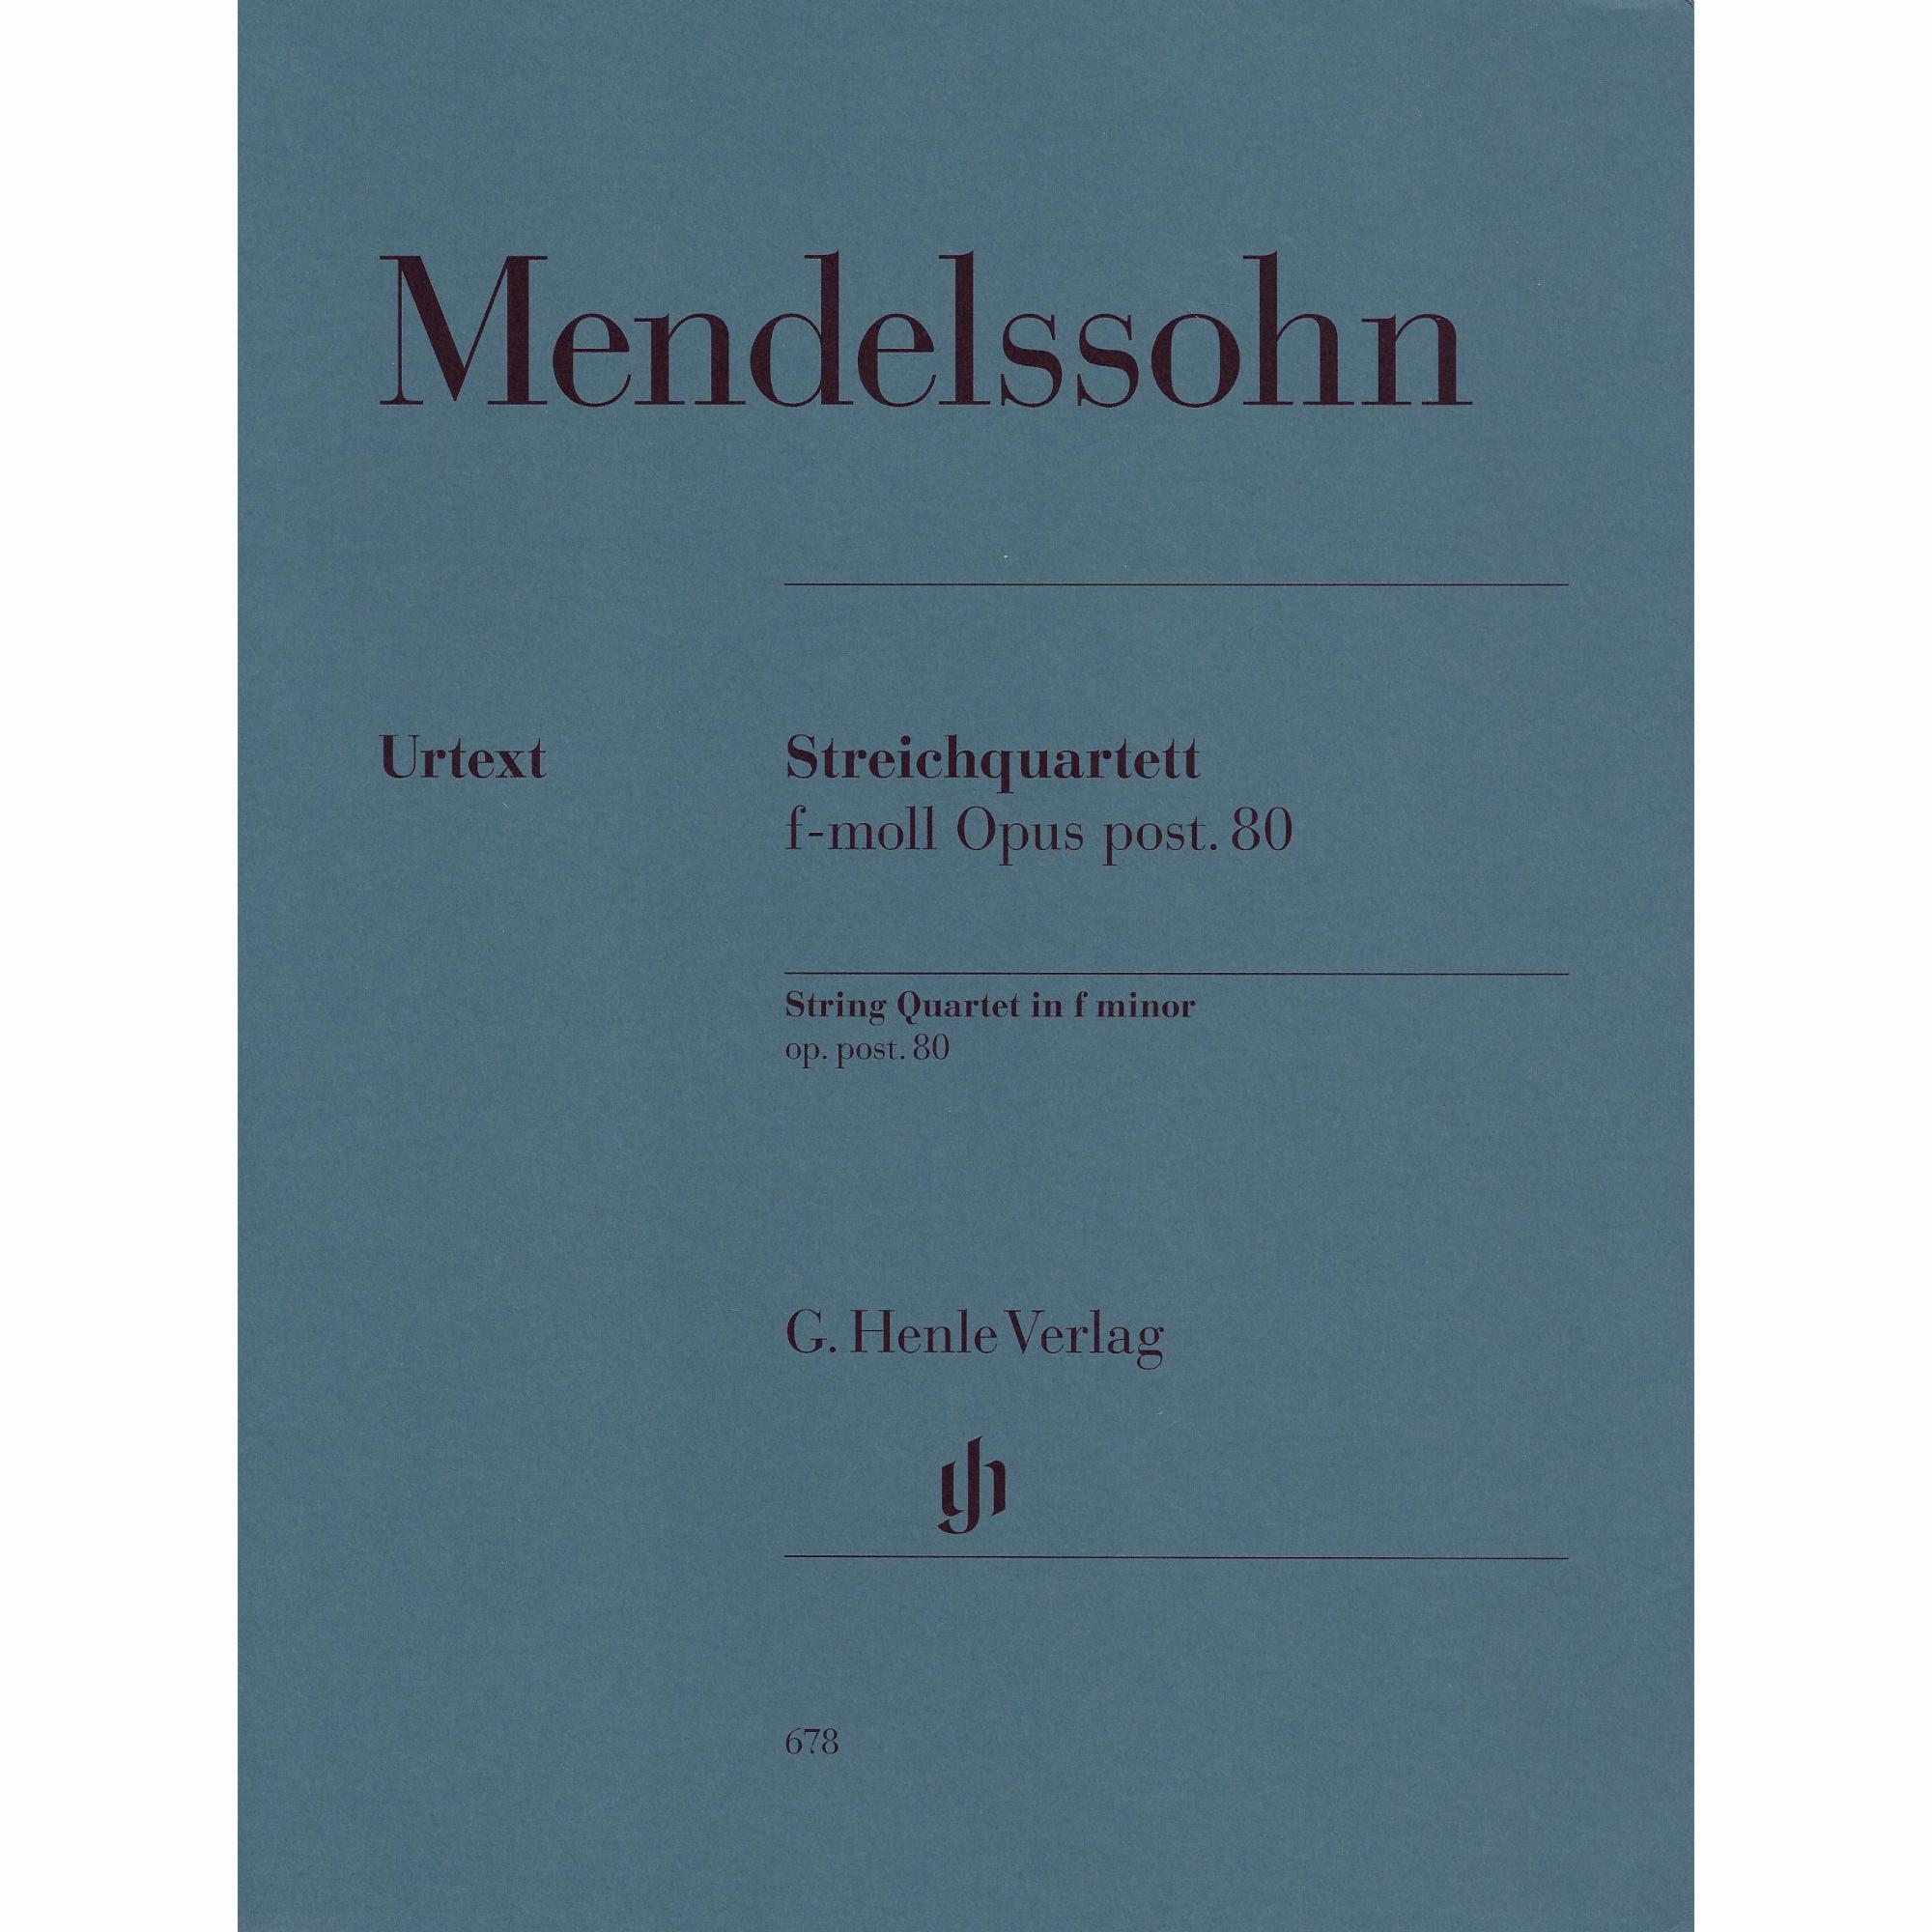 Mendelssohn -- String Quartet in F Minor, Op. post. 80